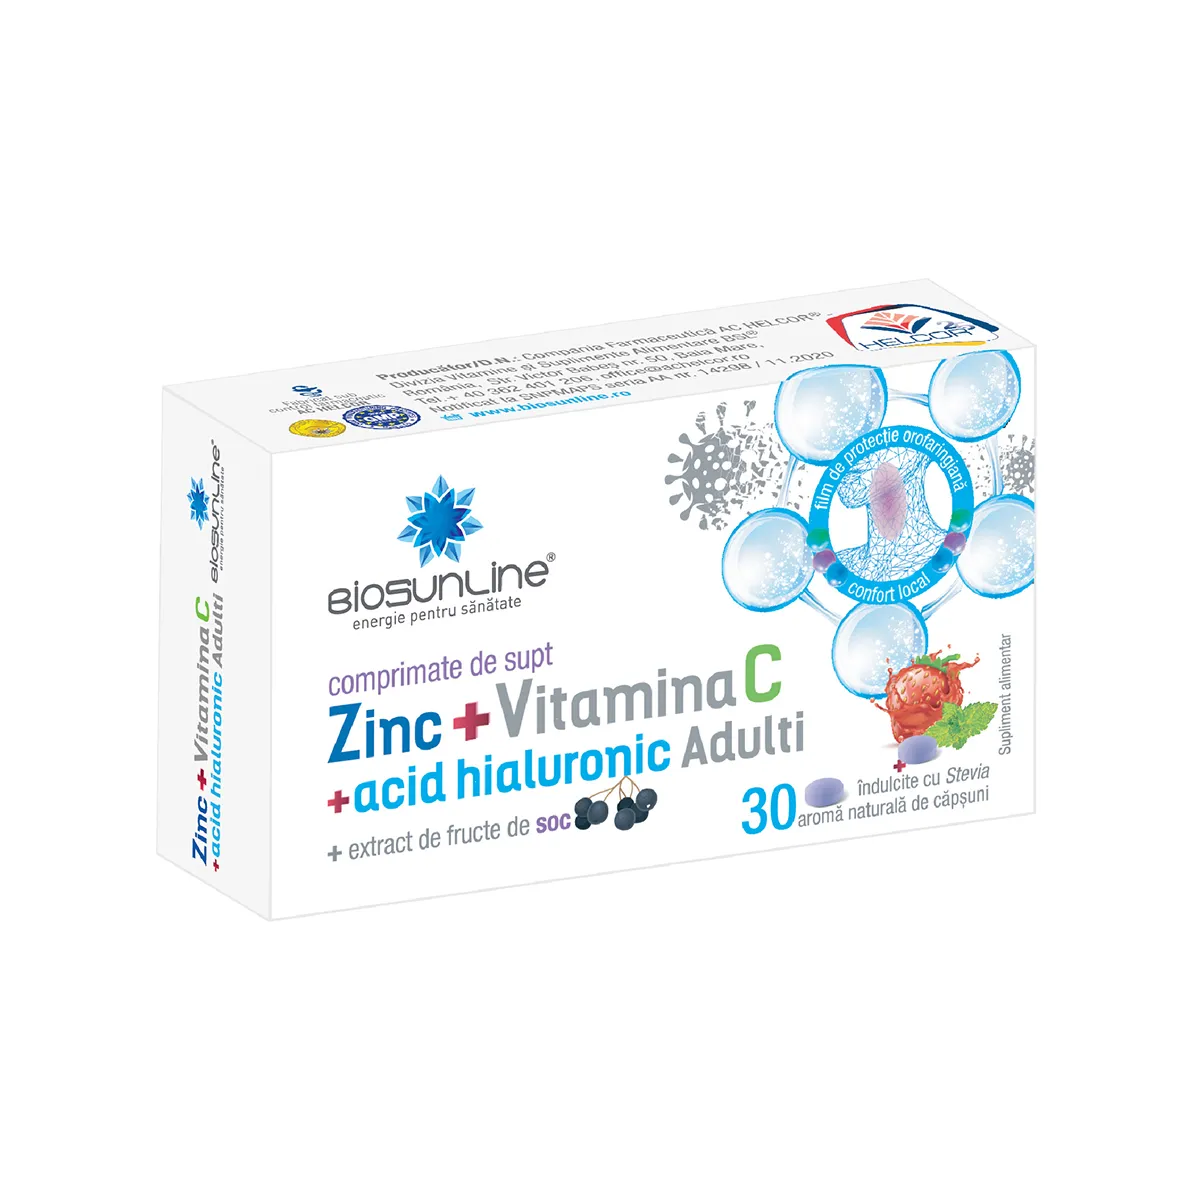 Zinc + Vitamina C + Acid Hialuronic pentru adulti, 30 comprimate de supt, BioSunLine